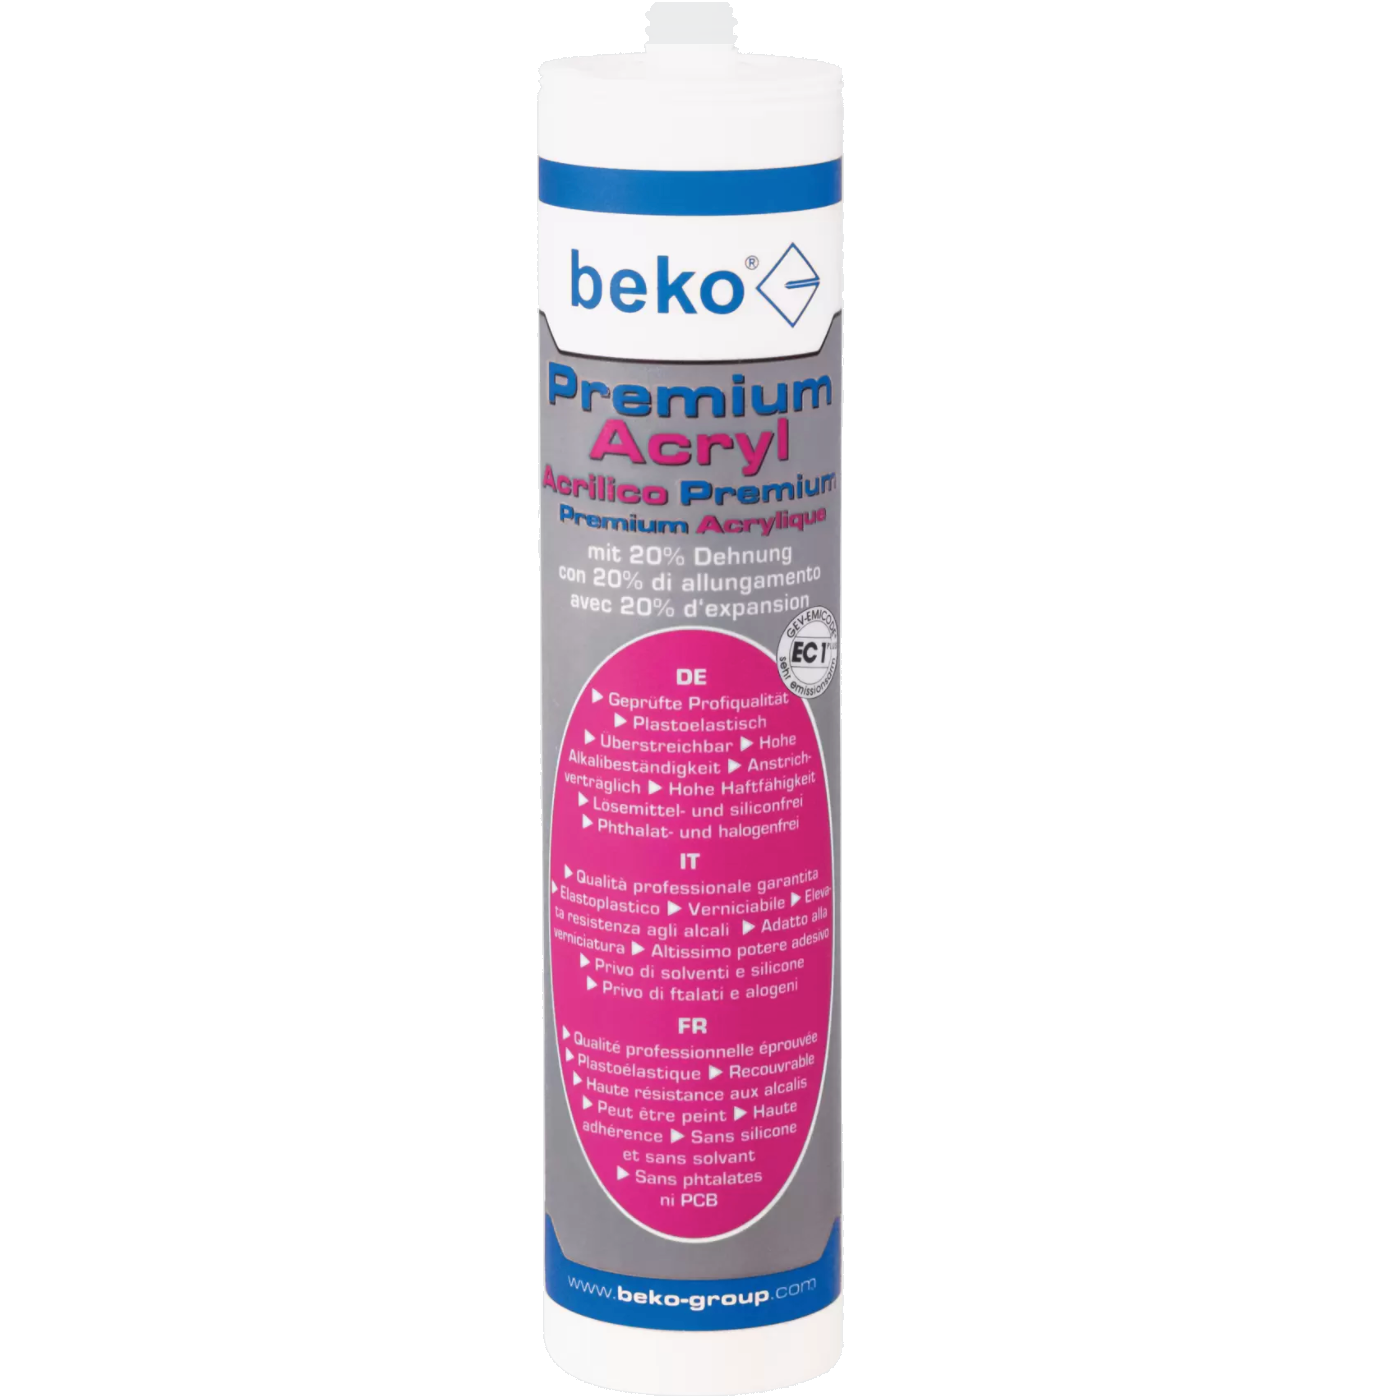 beko® Premium-Acryl mit 20% Dehnung